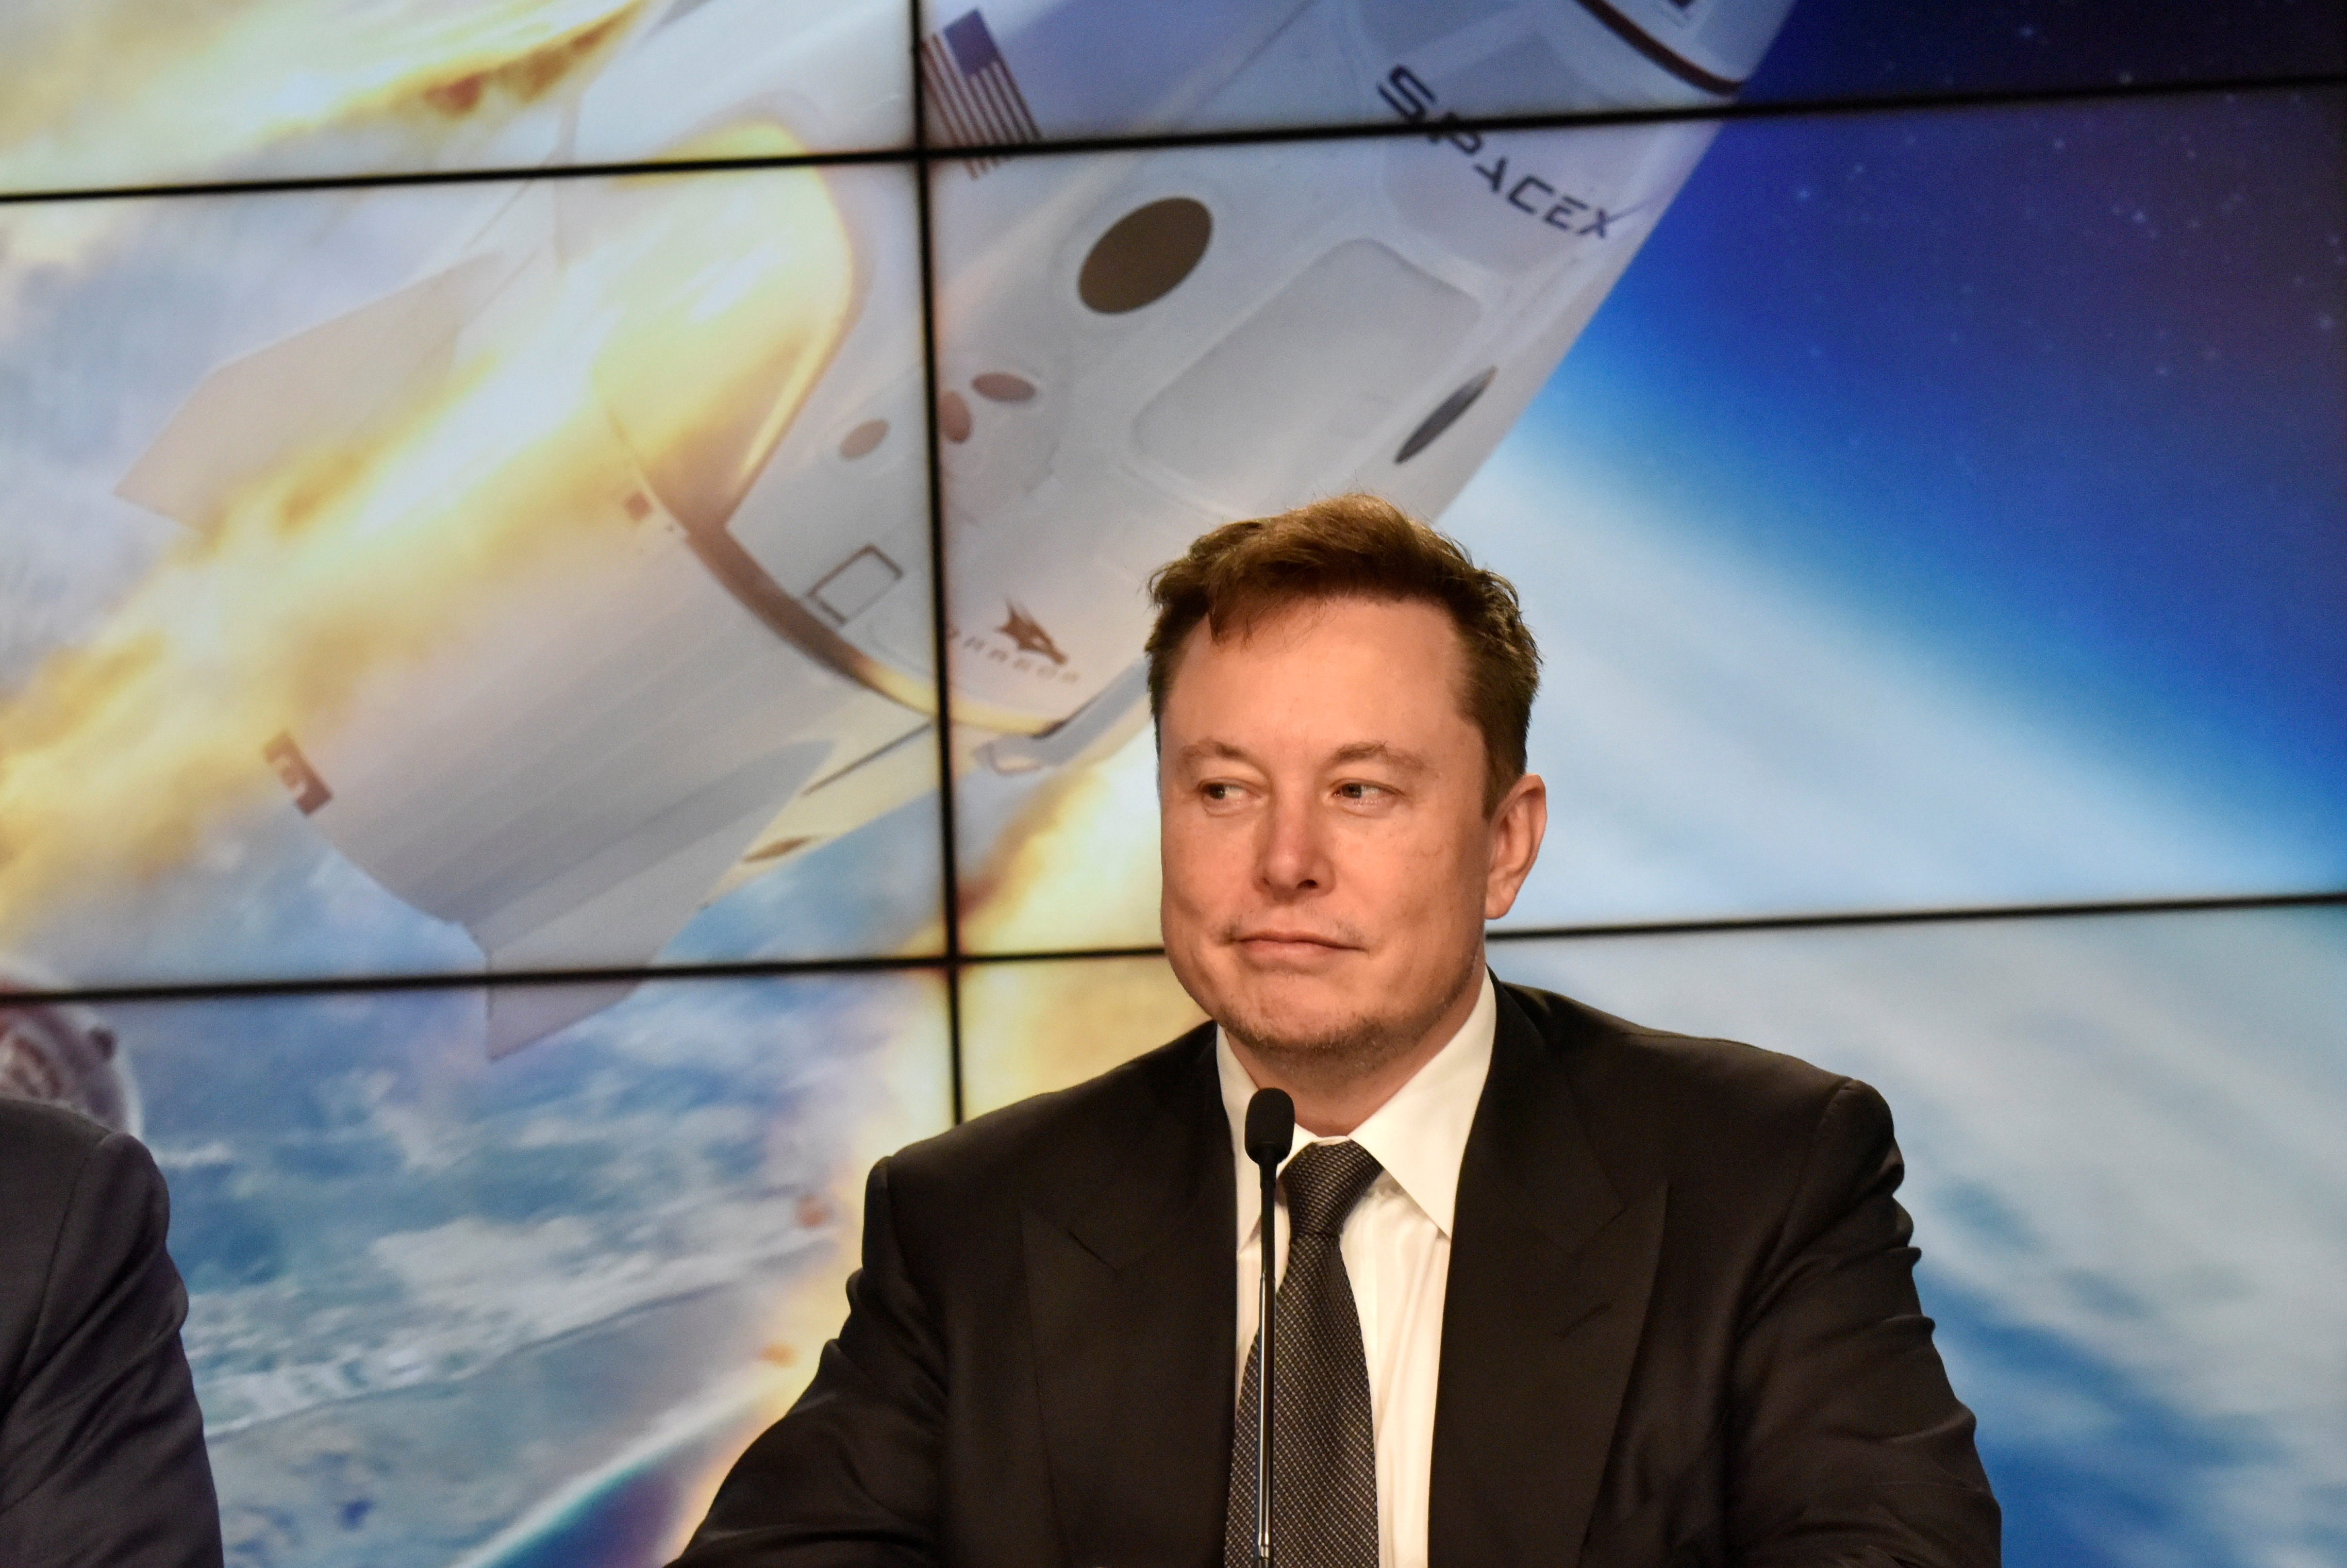 El fundador e ingeniero jefe de SpaceX, Elon Musk, asiste a una conferencia de prensa en el Centro Espacial Kennedy en Cabo Cañaveral, Florida, el 19 de enero de 2020. REUTERS/Steve Nesius